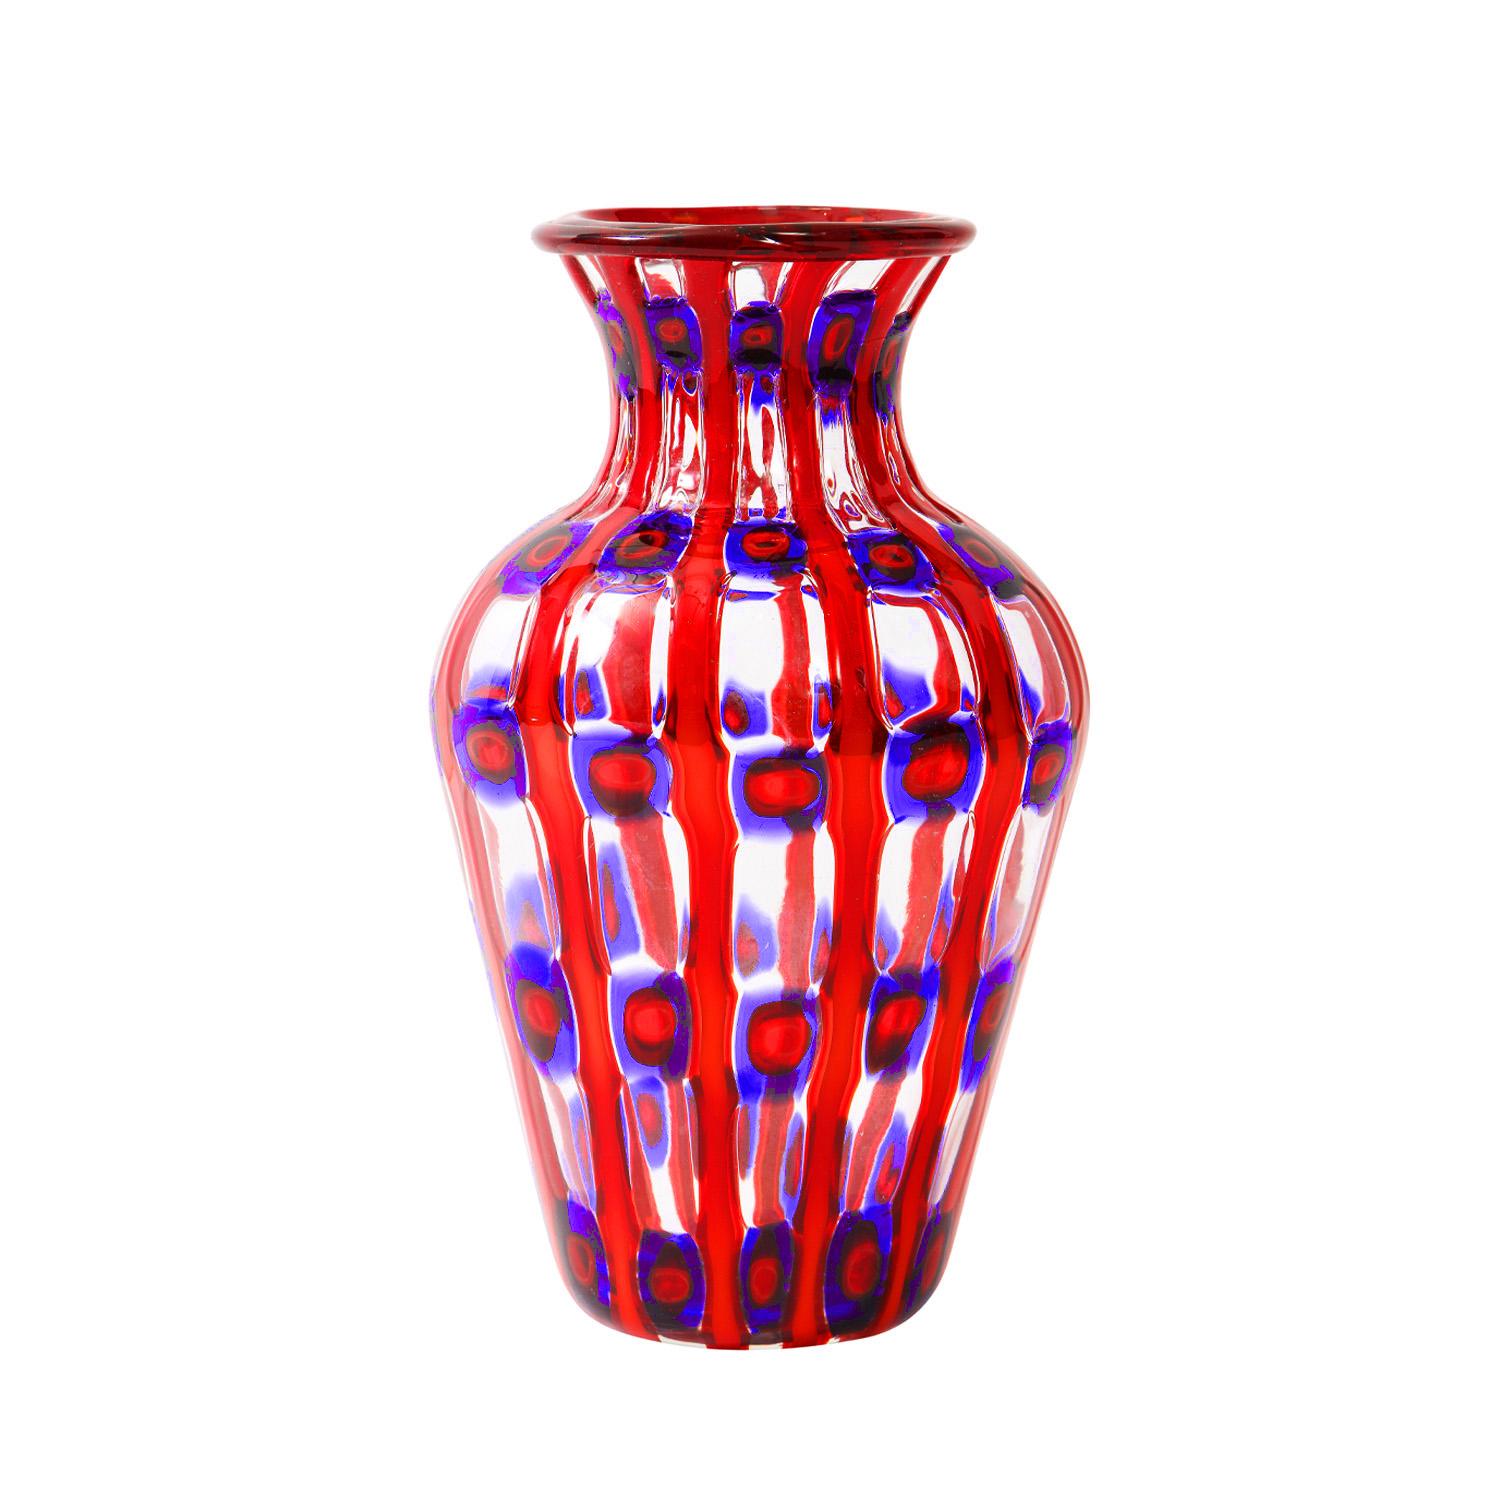 Handgeblasene Vase „Transennati“ (Barriers), Modell 15116, mit mehrfarbigen Stangen und Murrhinen, entworfen von Anzolo Fuga für Arte Vetraria Muranese (A.V.E.M.), Murano, Italien, ca. 1962. Ein wirklich atemberaubendes Stück.

Referenz:

Anzolo